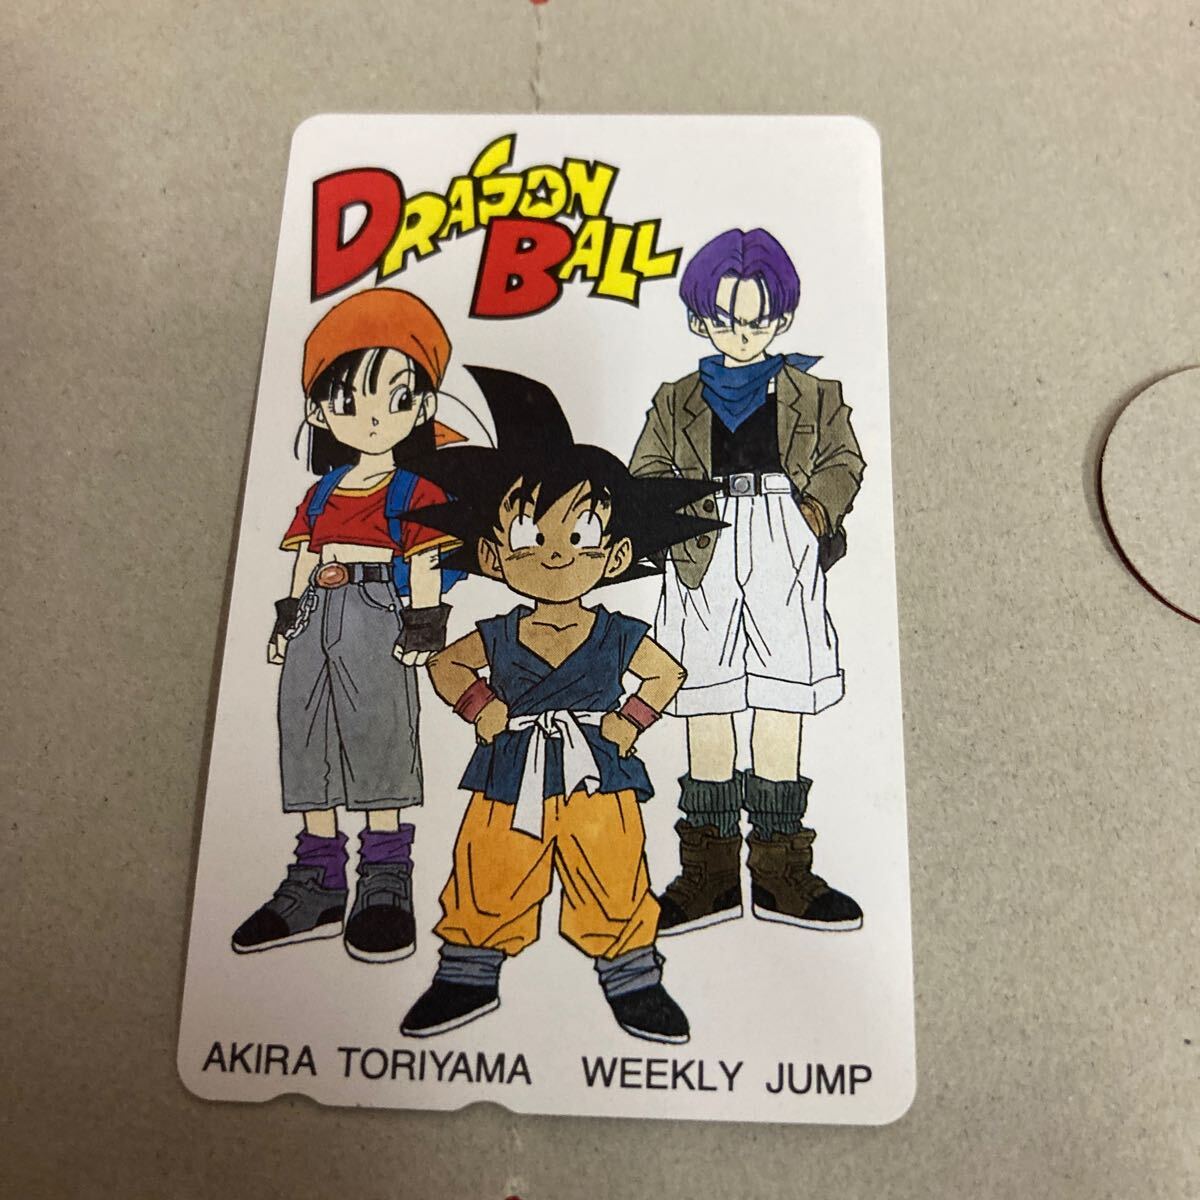  не использовался товар Toriyama Akira Dragon Ball еженедельный Shonen Jump телефонная карточка телефонная карточка 